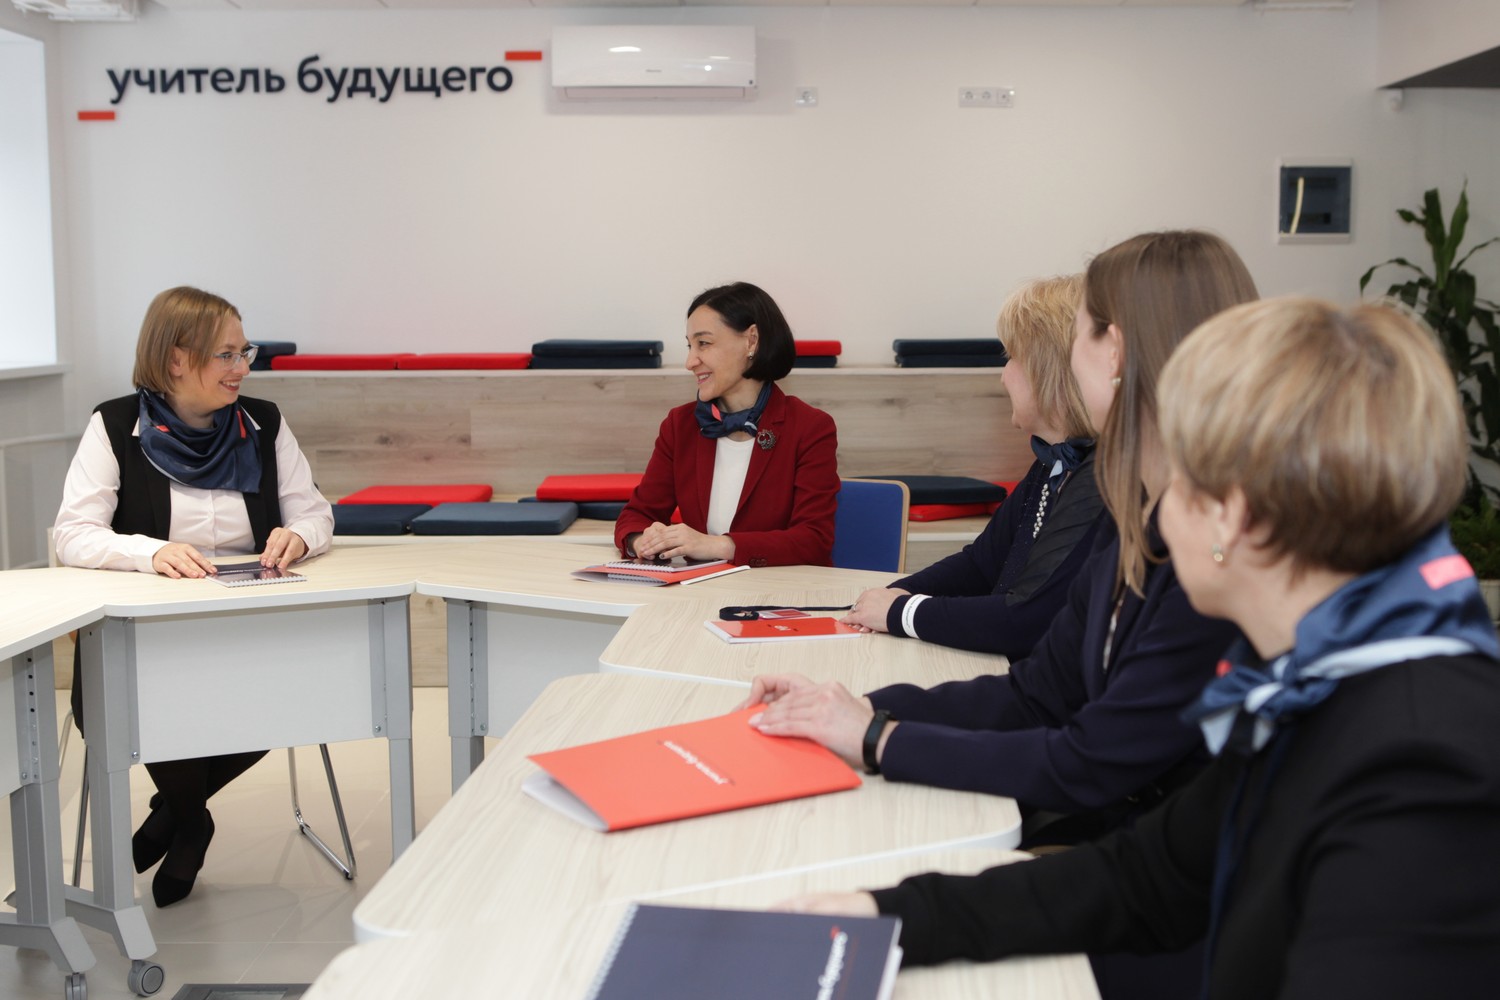 Центр «Учитель будущего» обеспечивает поддержку наставнических практик в школах Свердловской области